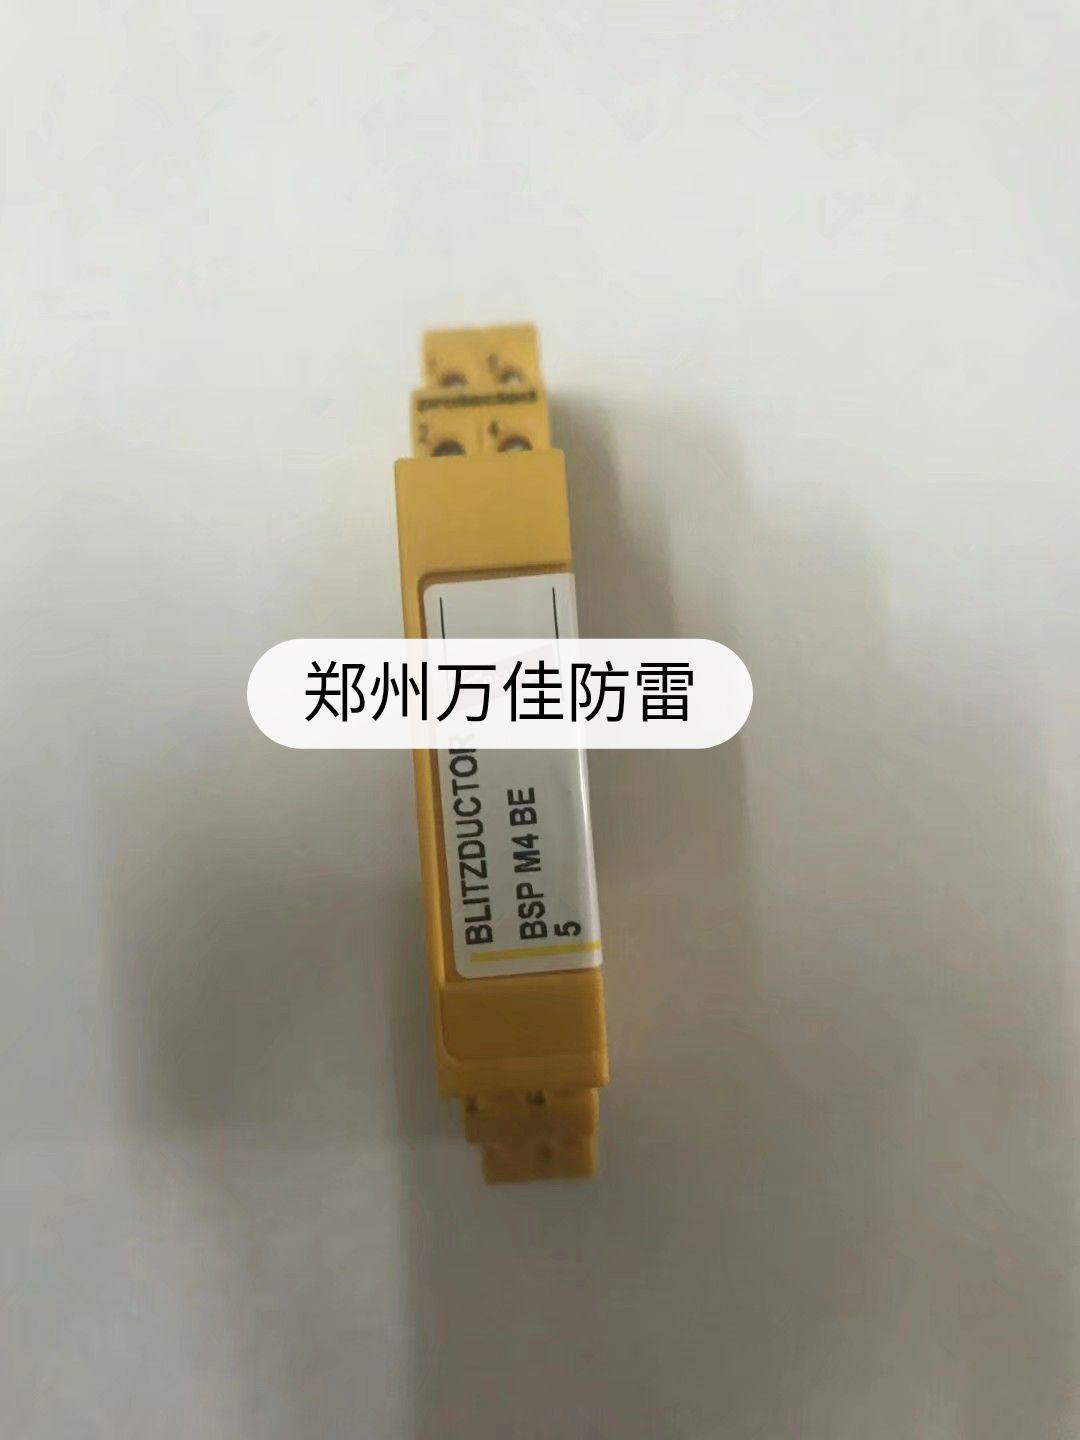 上海铁大防雷元件 CRCC认证电源避雷器 铁路专用防雷模块LQ 110XH